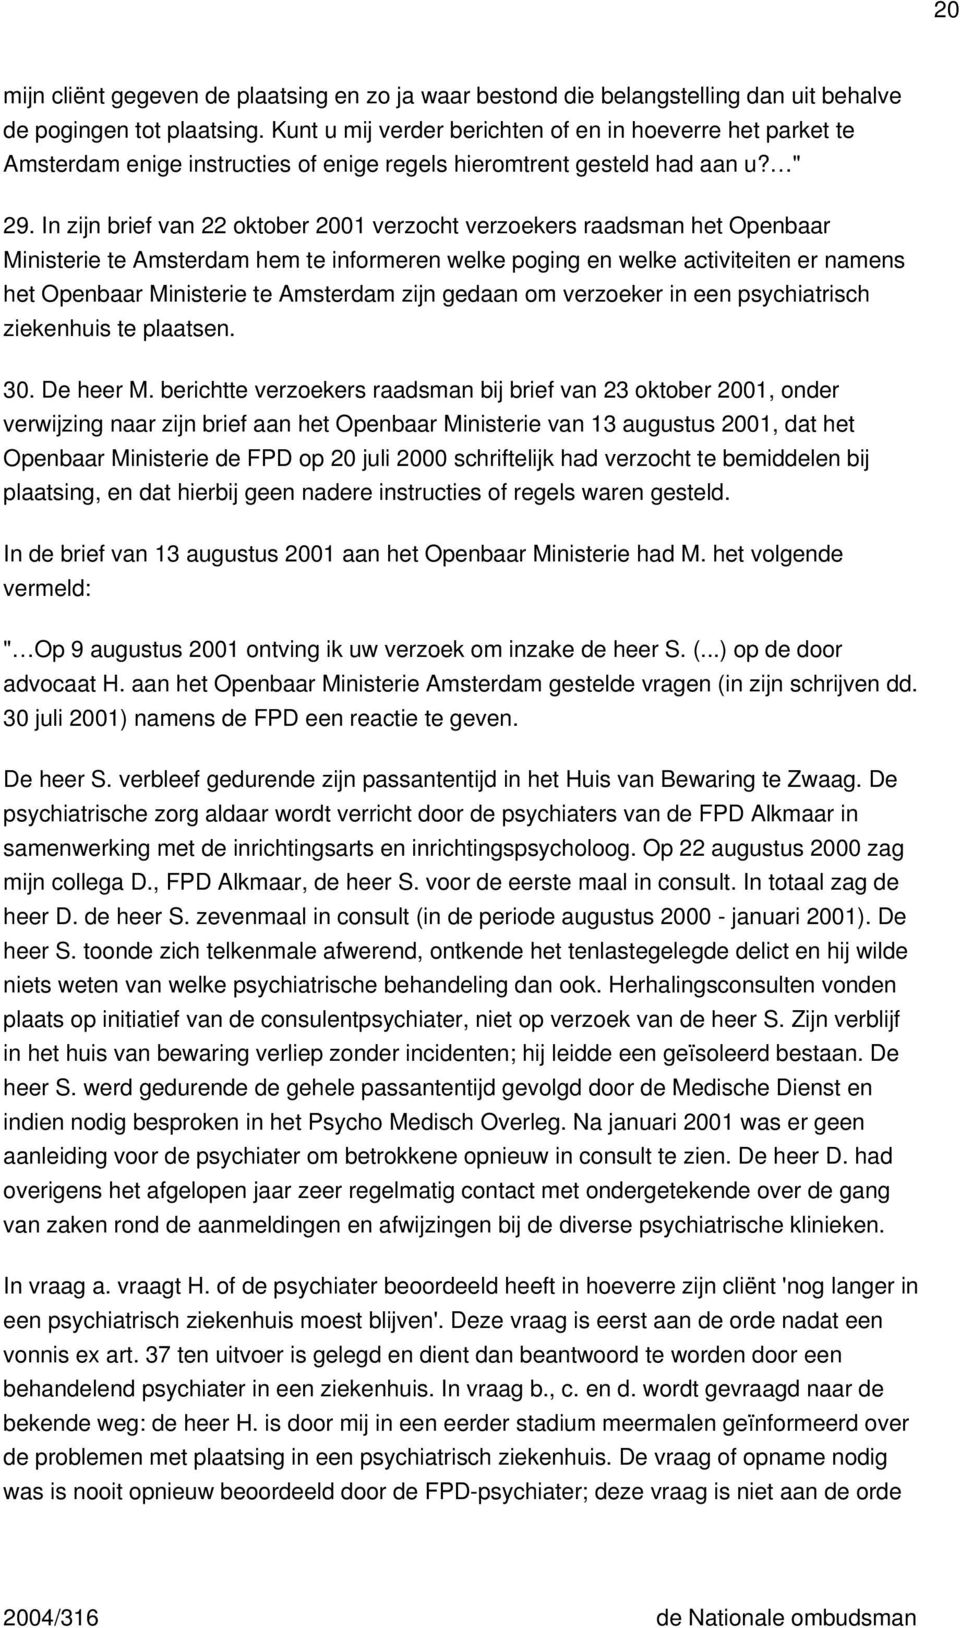 In zijn brief van 22 oktober 2001 verzocht verzoekers raadsman het Openbaar Ministerie te Amsterdam hem te informeren welke poging en welke activiteiten er namens het Openbaar Ministerie te Amsterdam